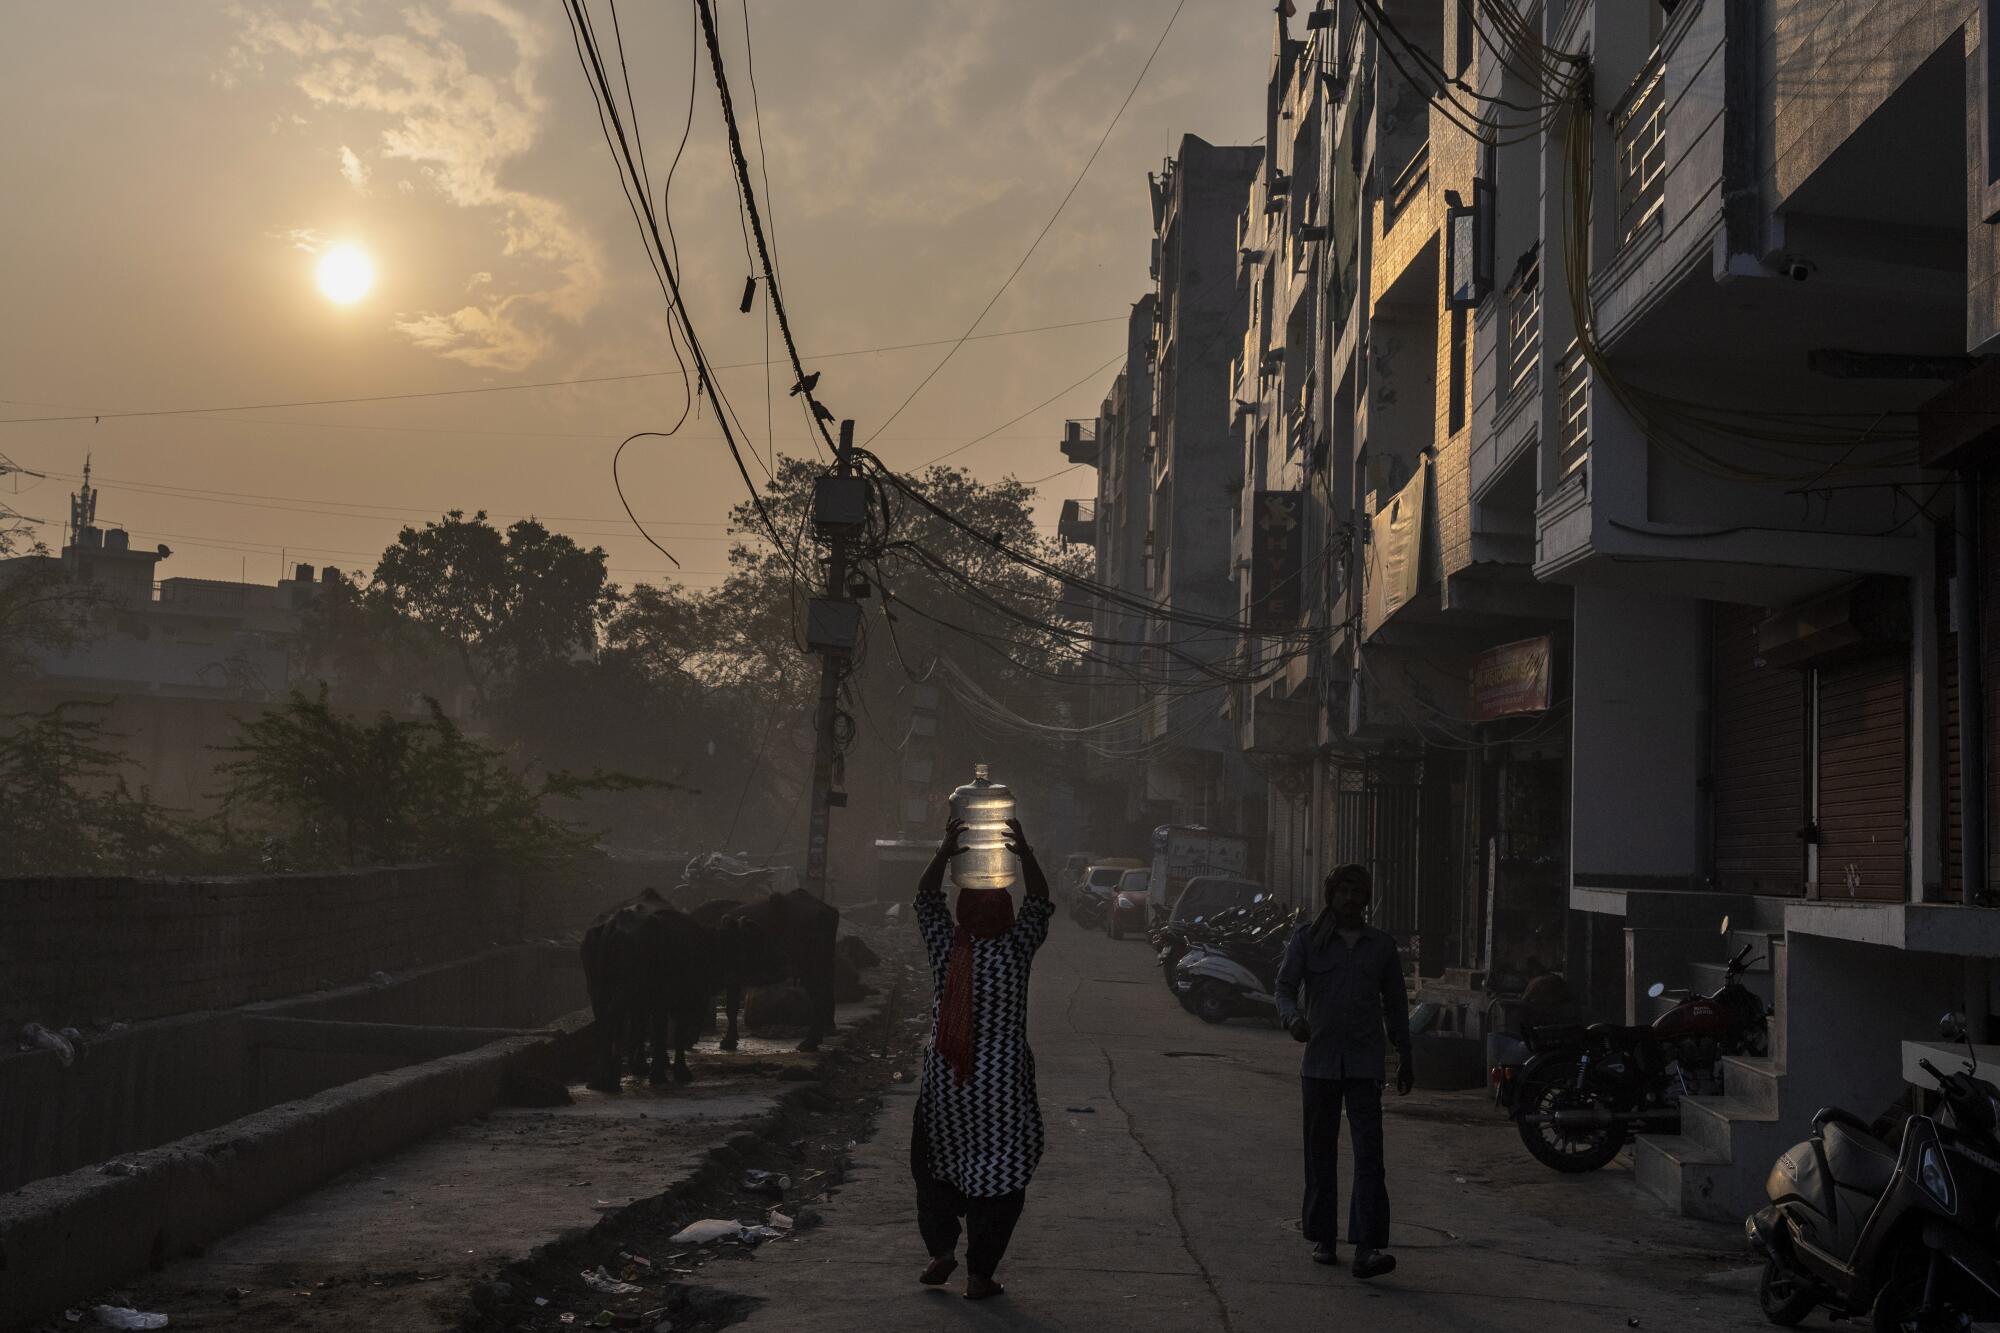 Eine Frau trägt in einem Wohngebiet in Indien einen Krug auf dem Kopf.